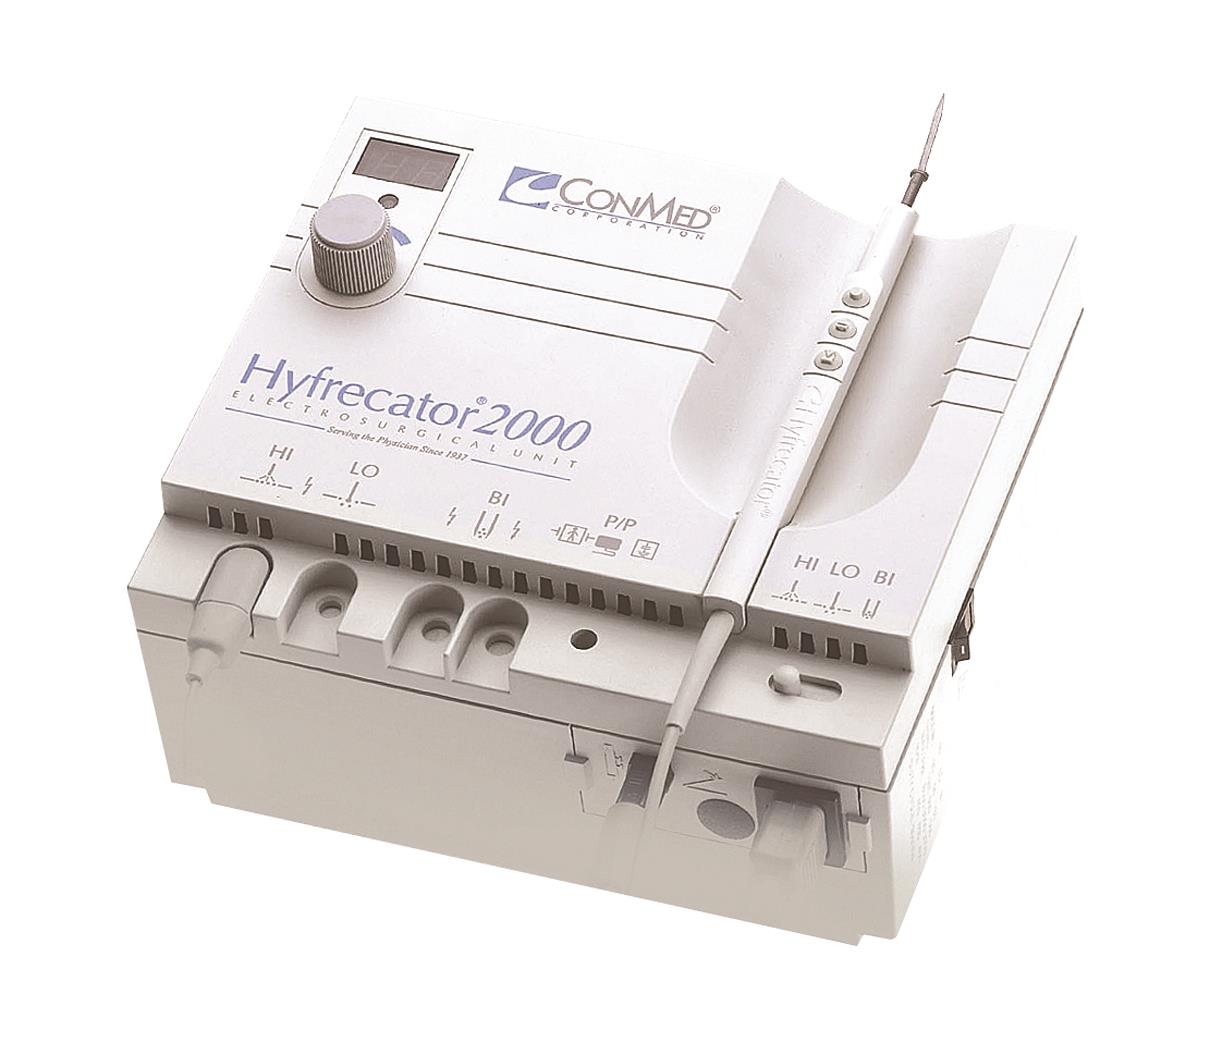 Conmed Hyfrecator 2000 - Hillcroft Supplies